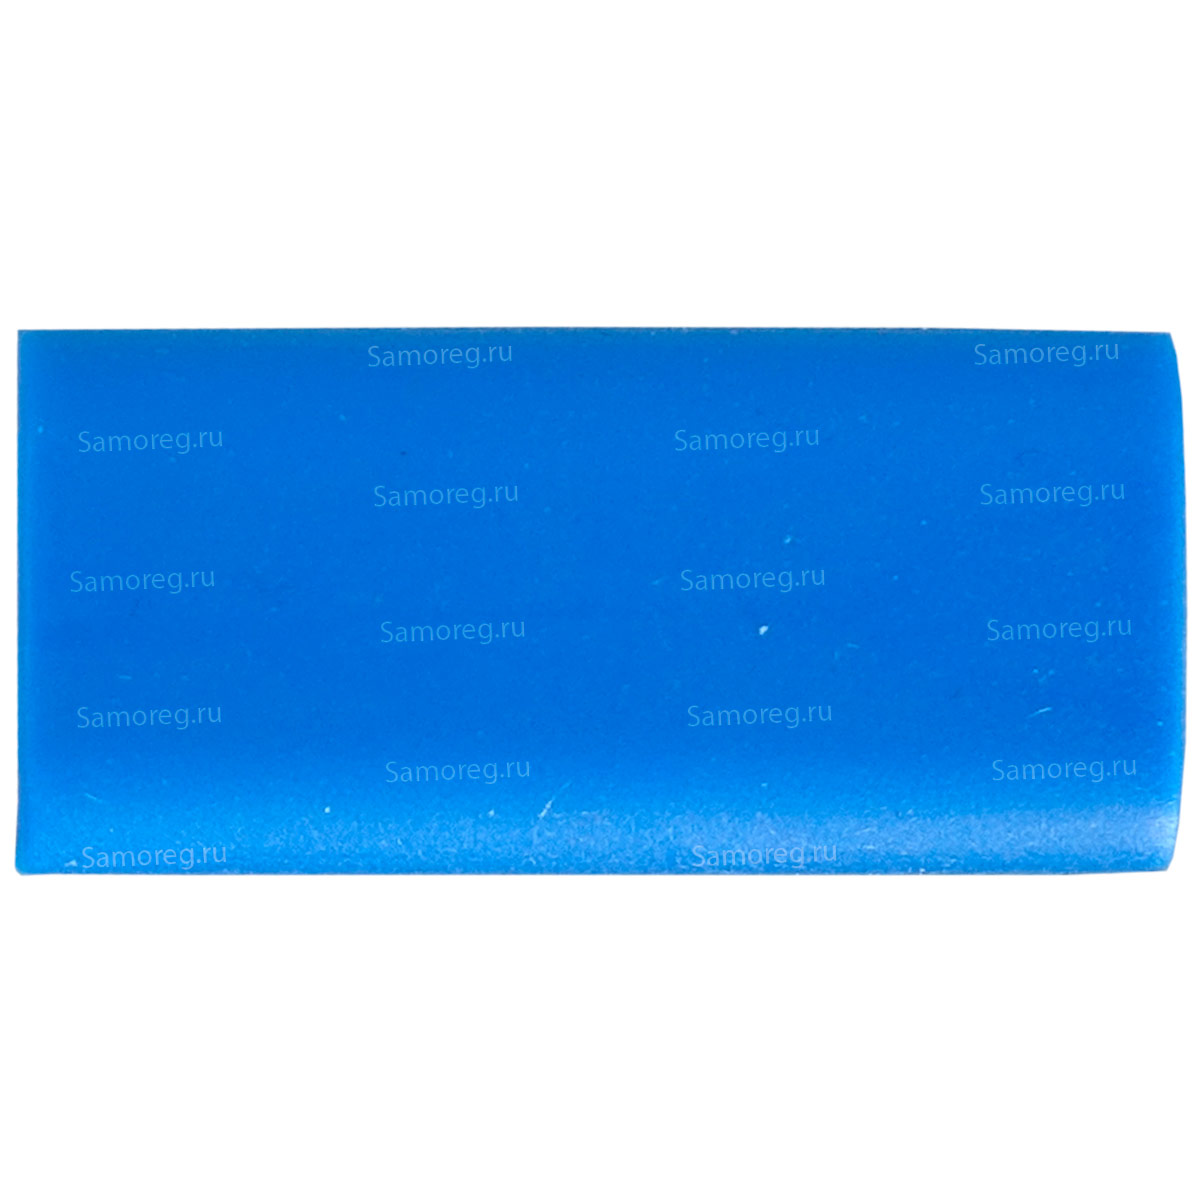 Заделка соединительная V-MZ цвет синий, длина 32 мм